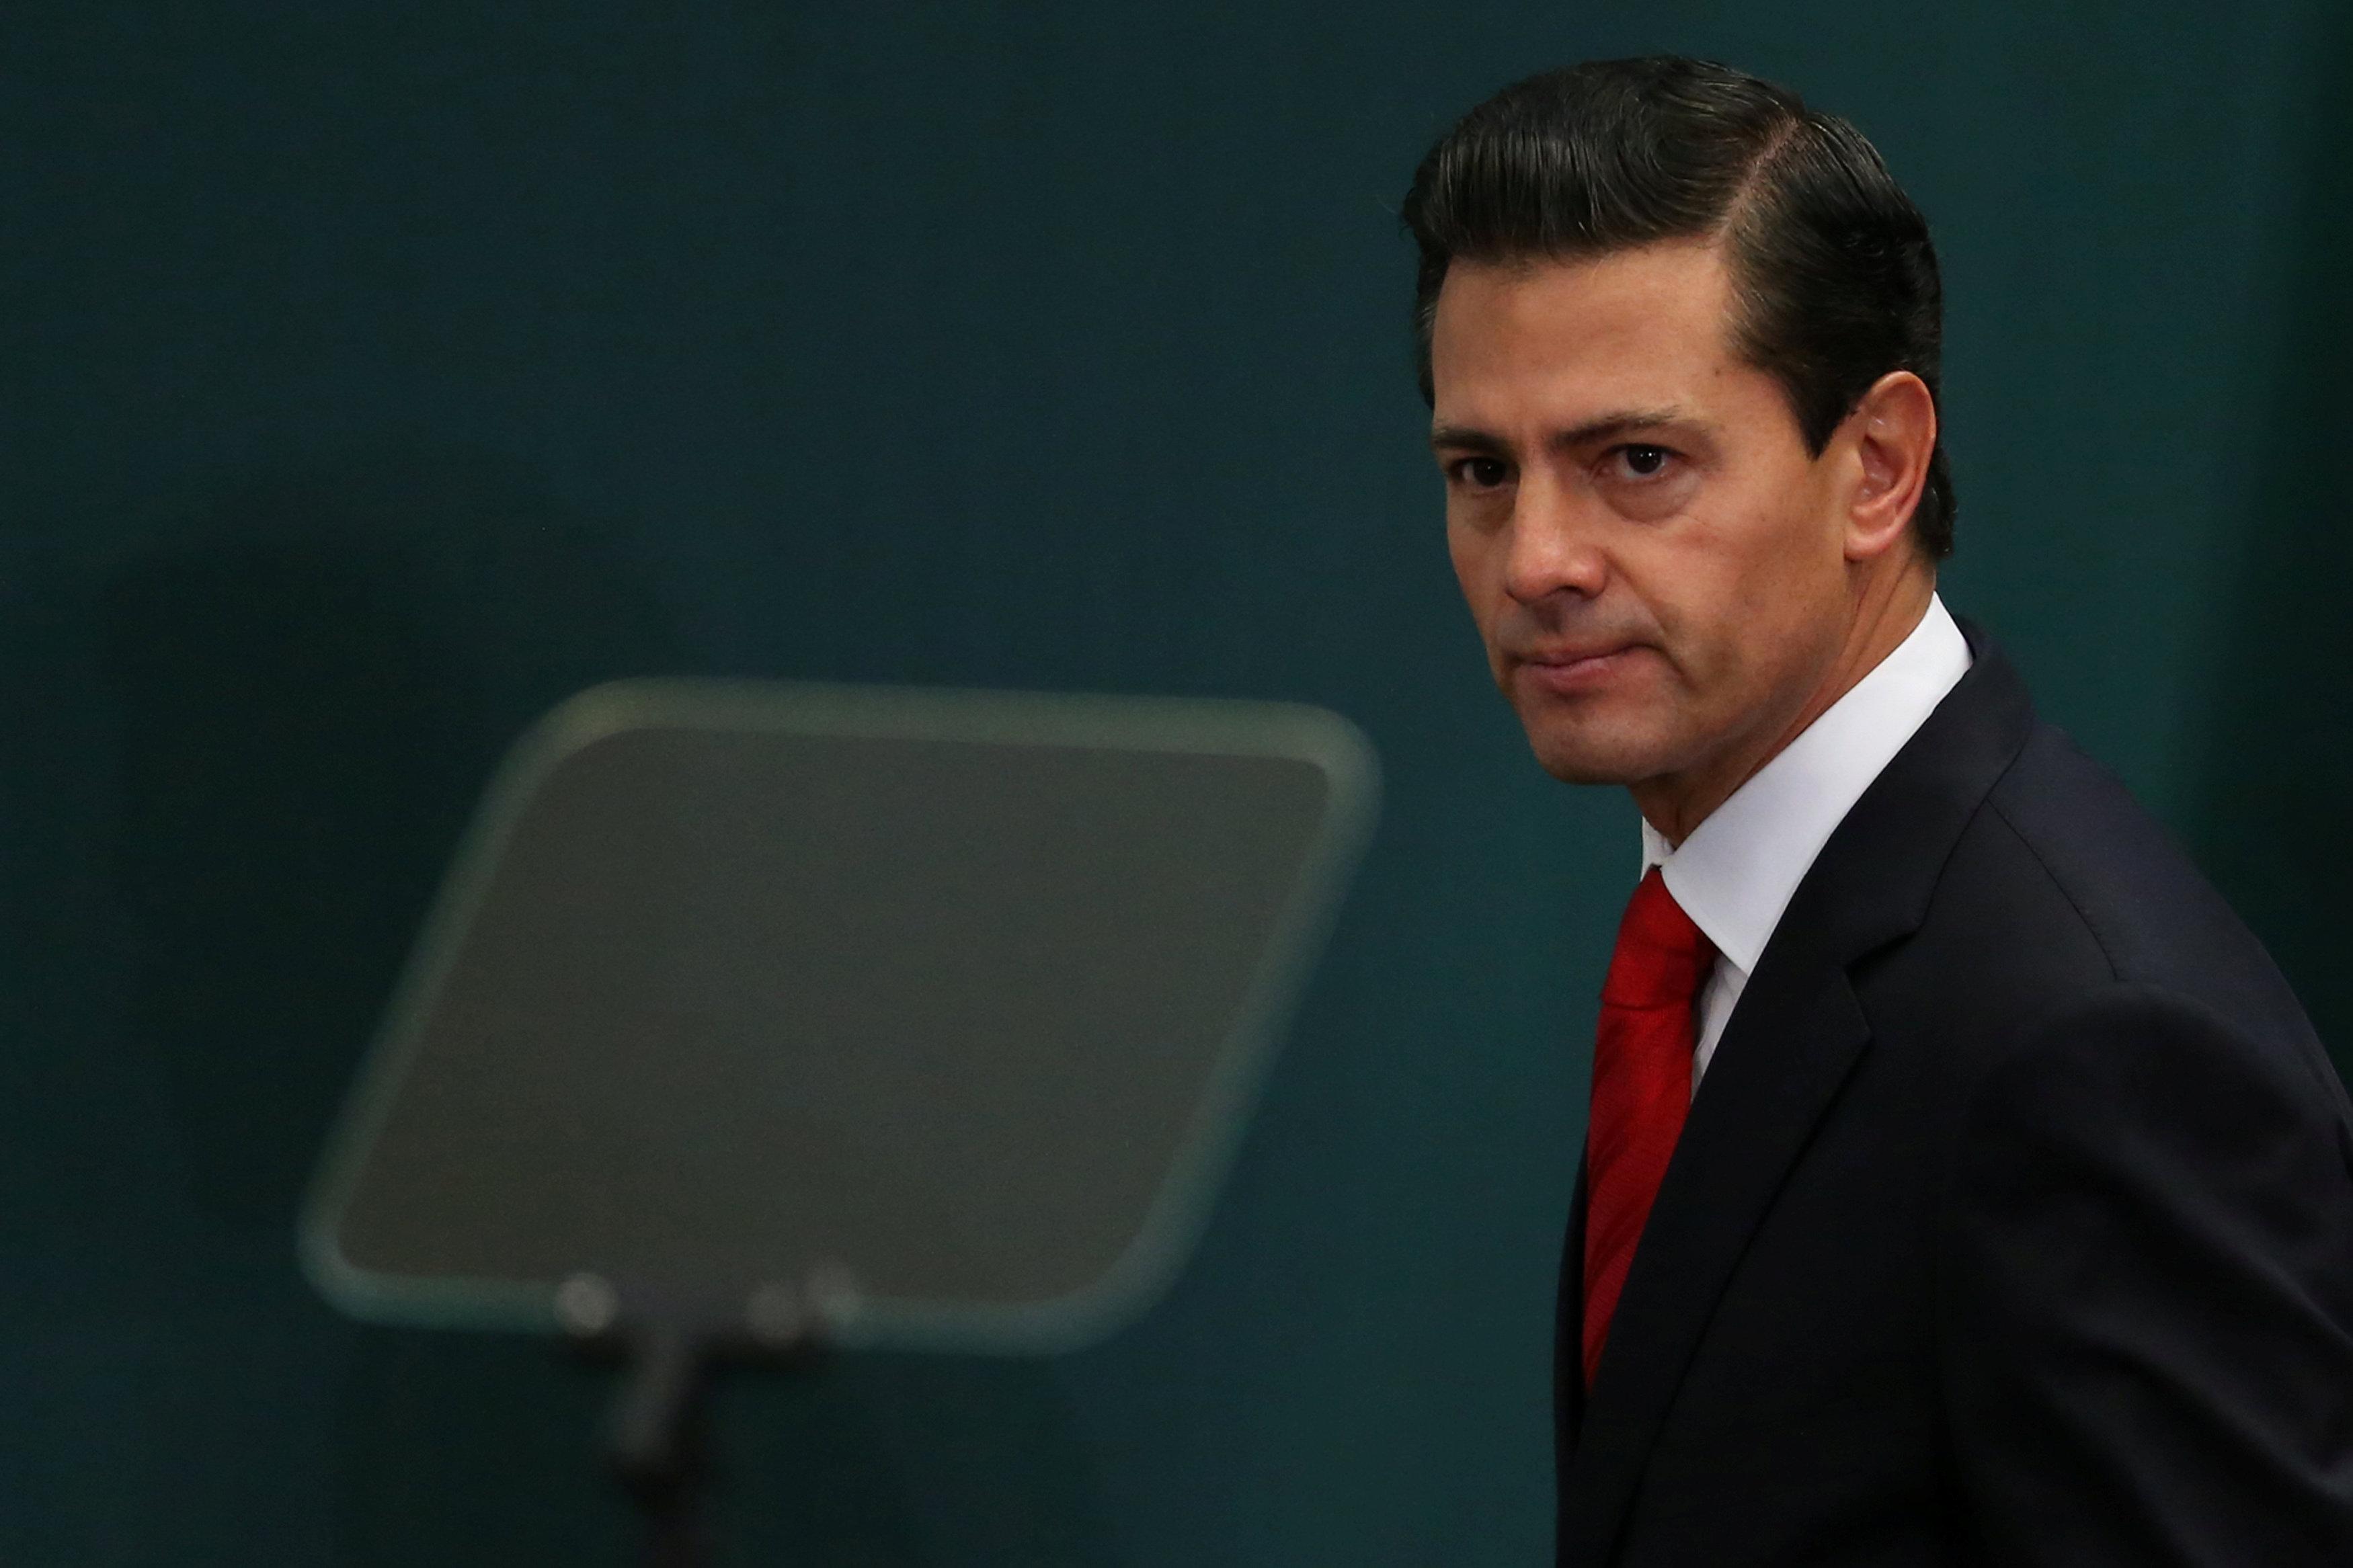 Meksiko menyelidiki mantan presiden Pena Nieto untuk pencucian uang, sumber mengatakan GMA News Online